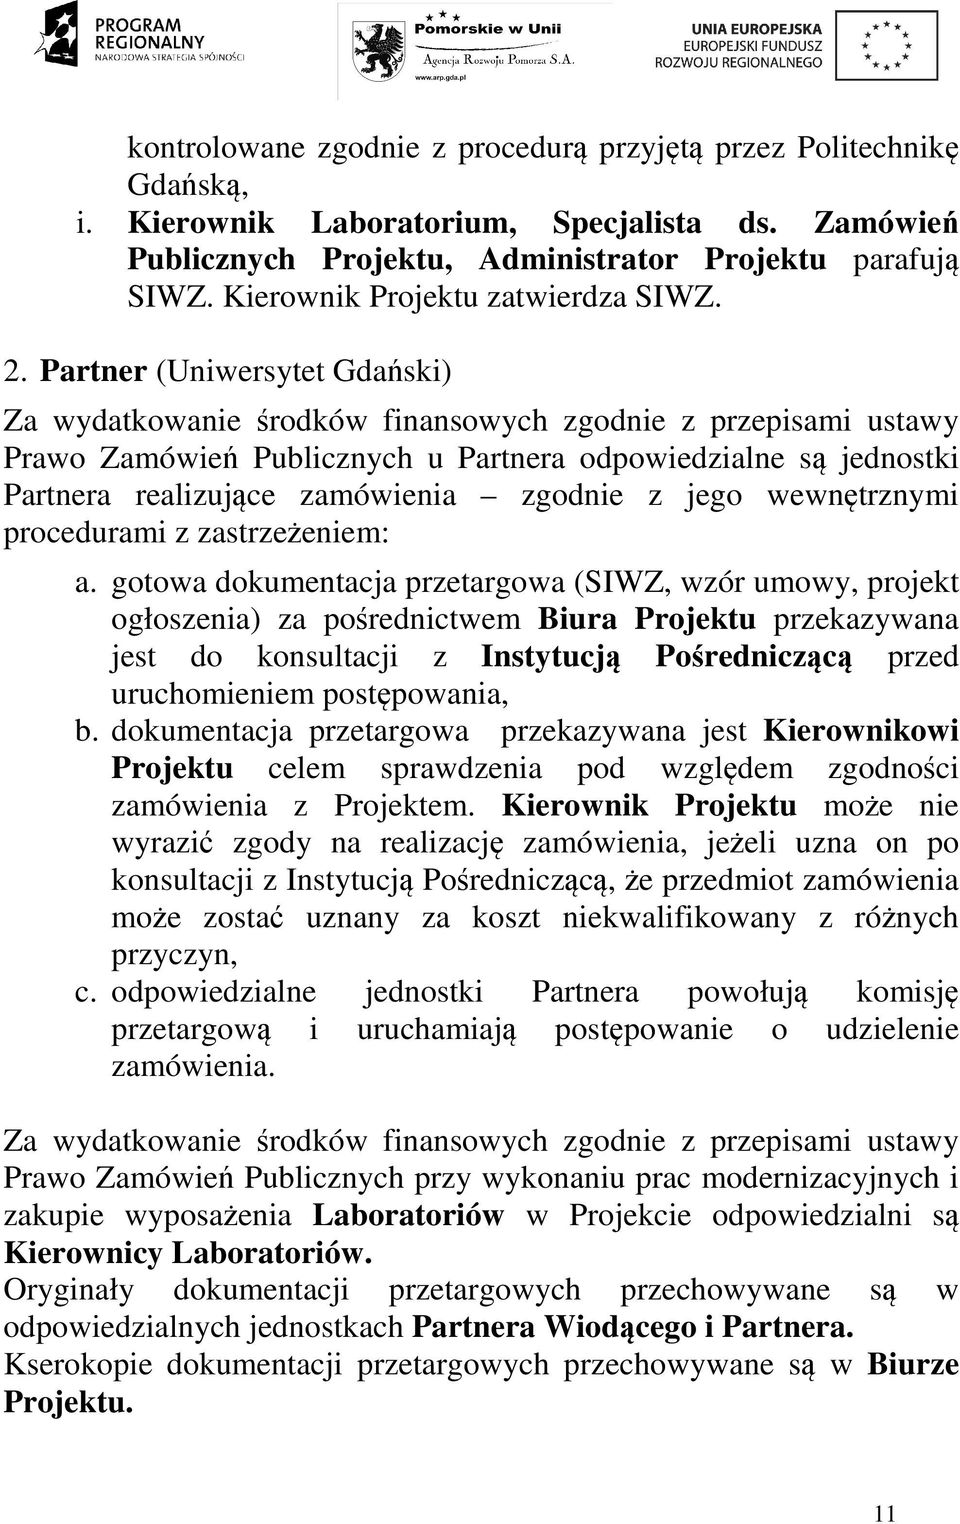 Partner (Uniwersytet Gdański) Za wydatkowanie środków finansowych zgodnie z przepisami ustawy Prawo Zamówień Publicznych u Partnera odpowiedzialne są jednostki Partnera realizujące zamówienia zgodnie